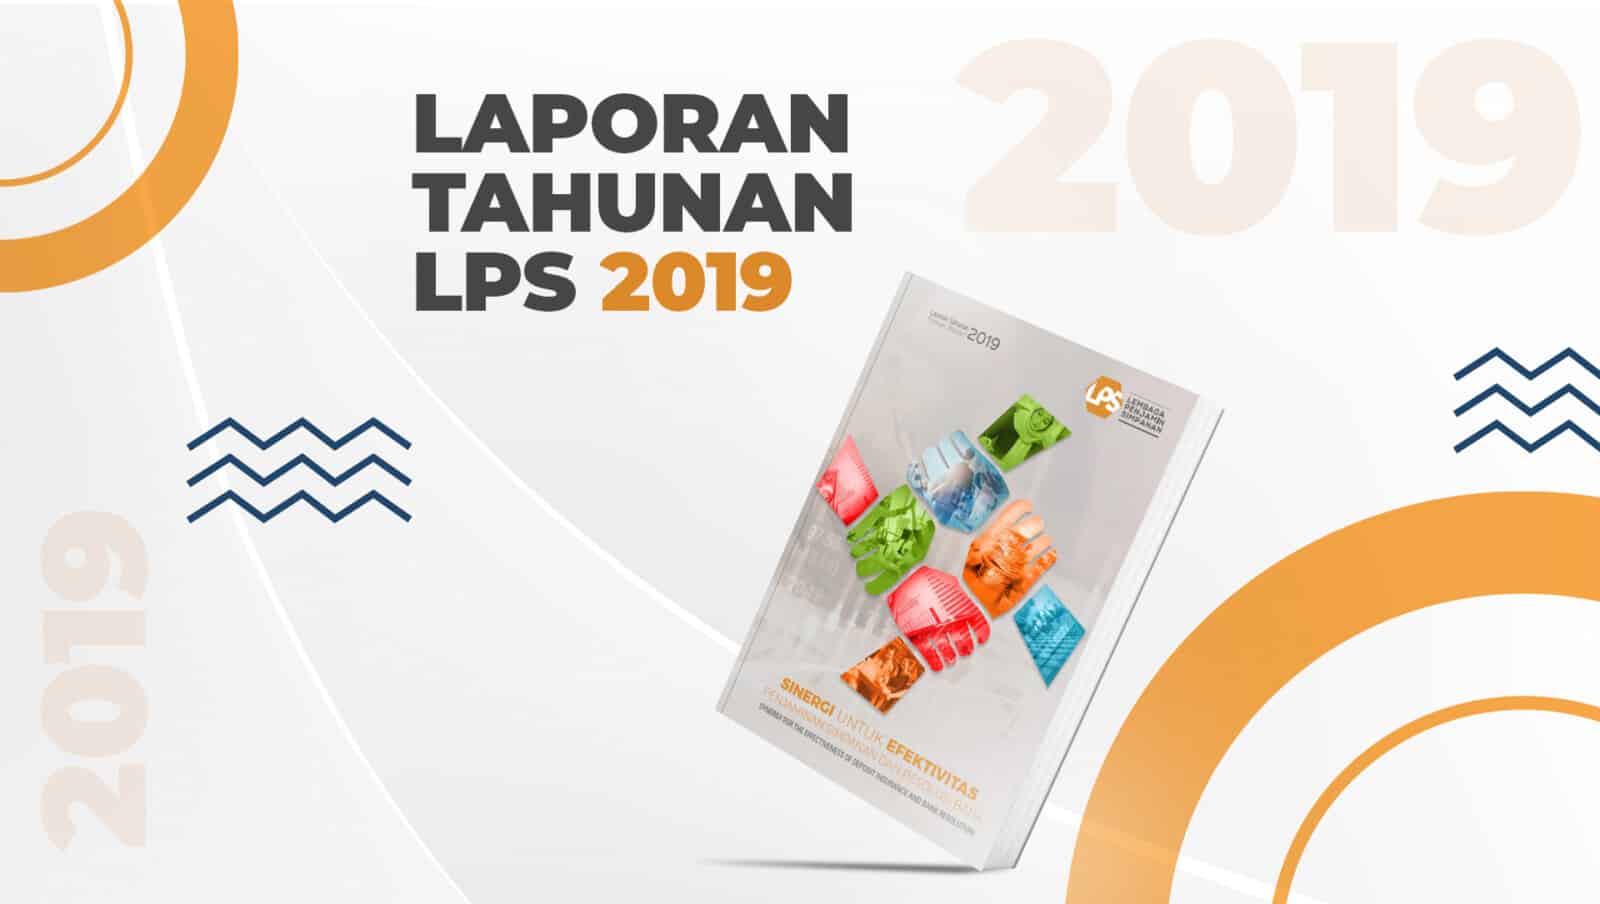 Laporan Tahunan LPS 2019